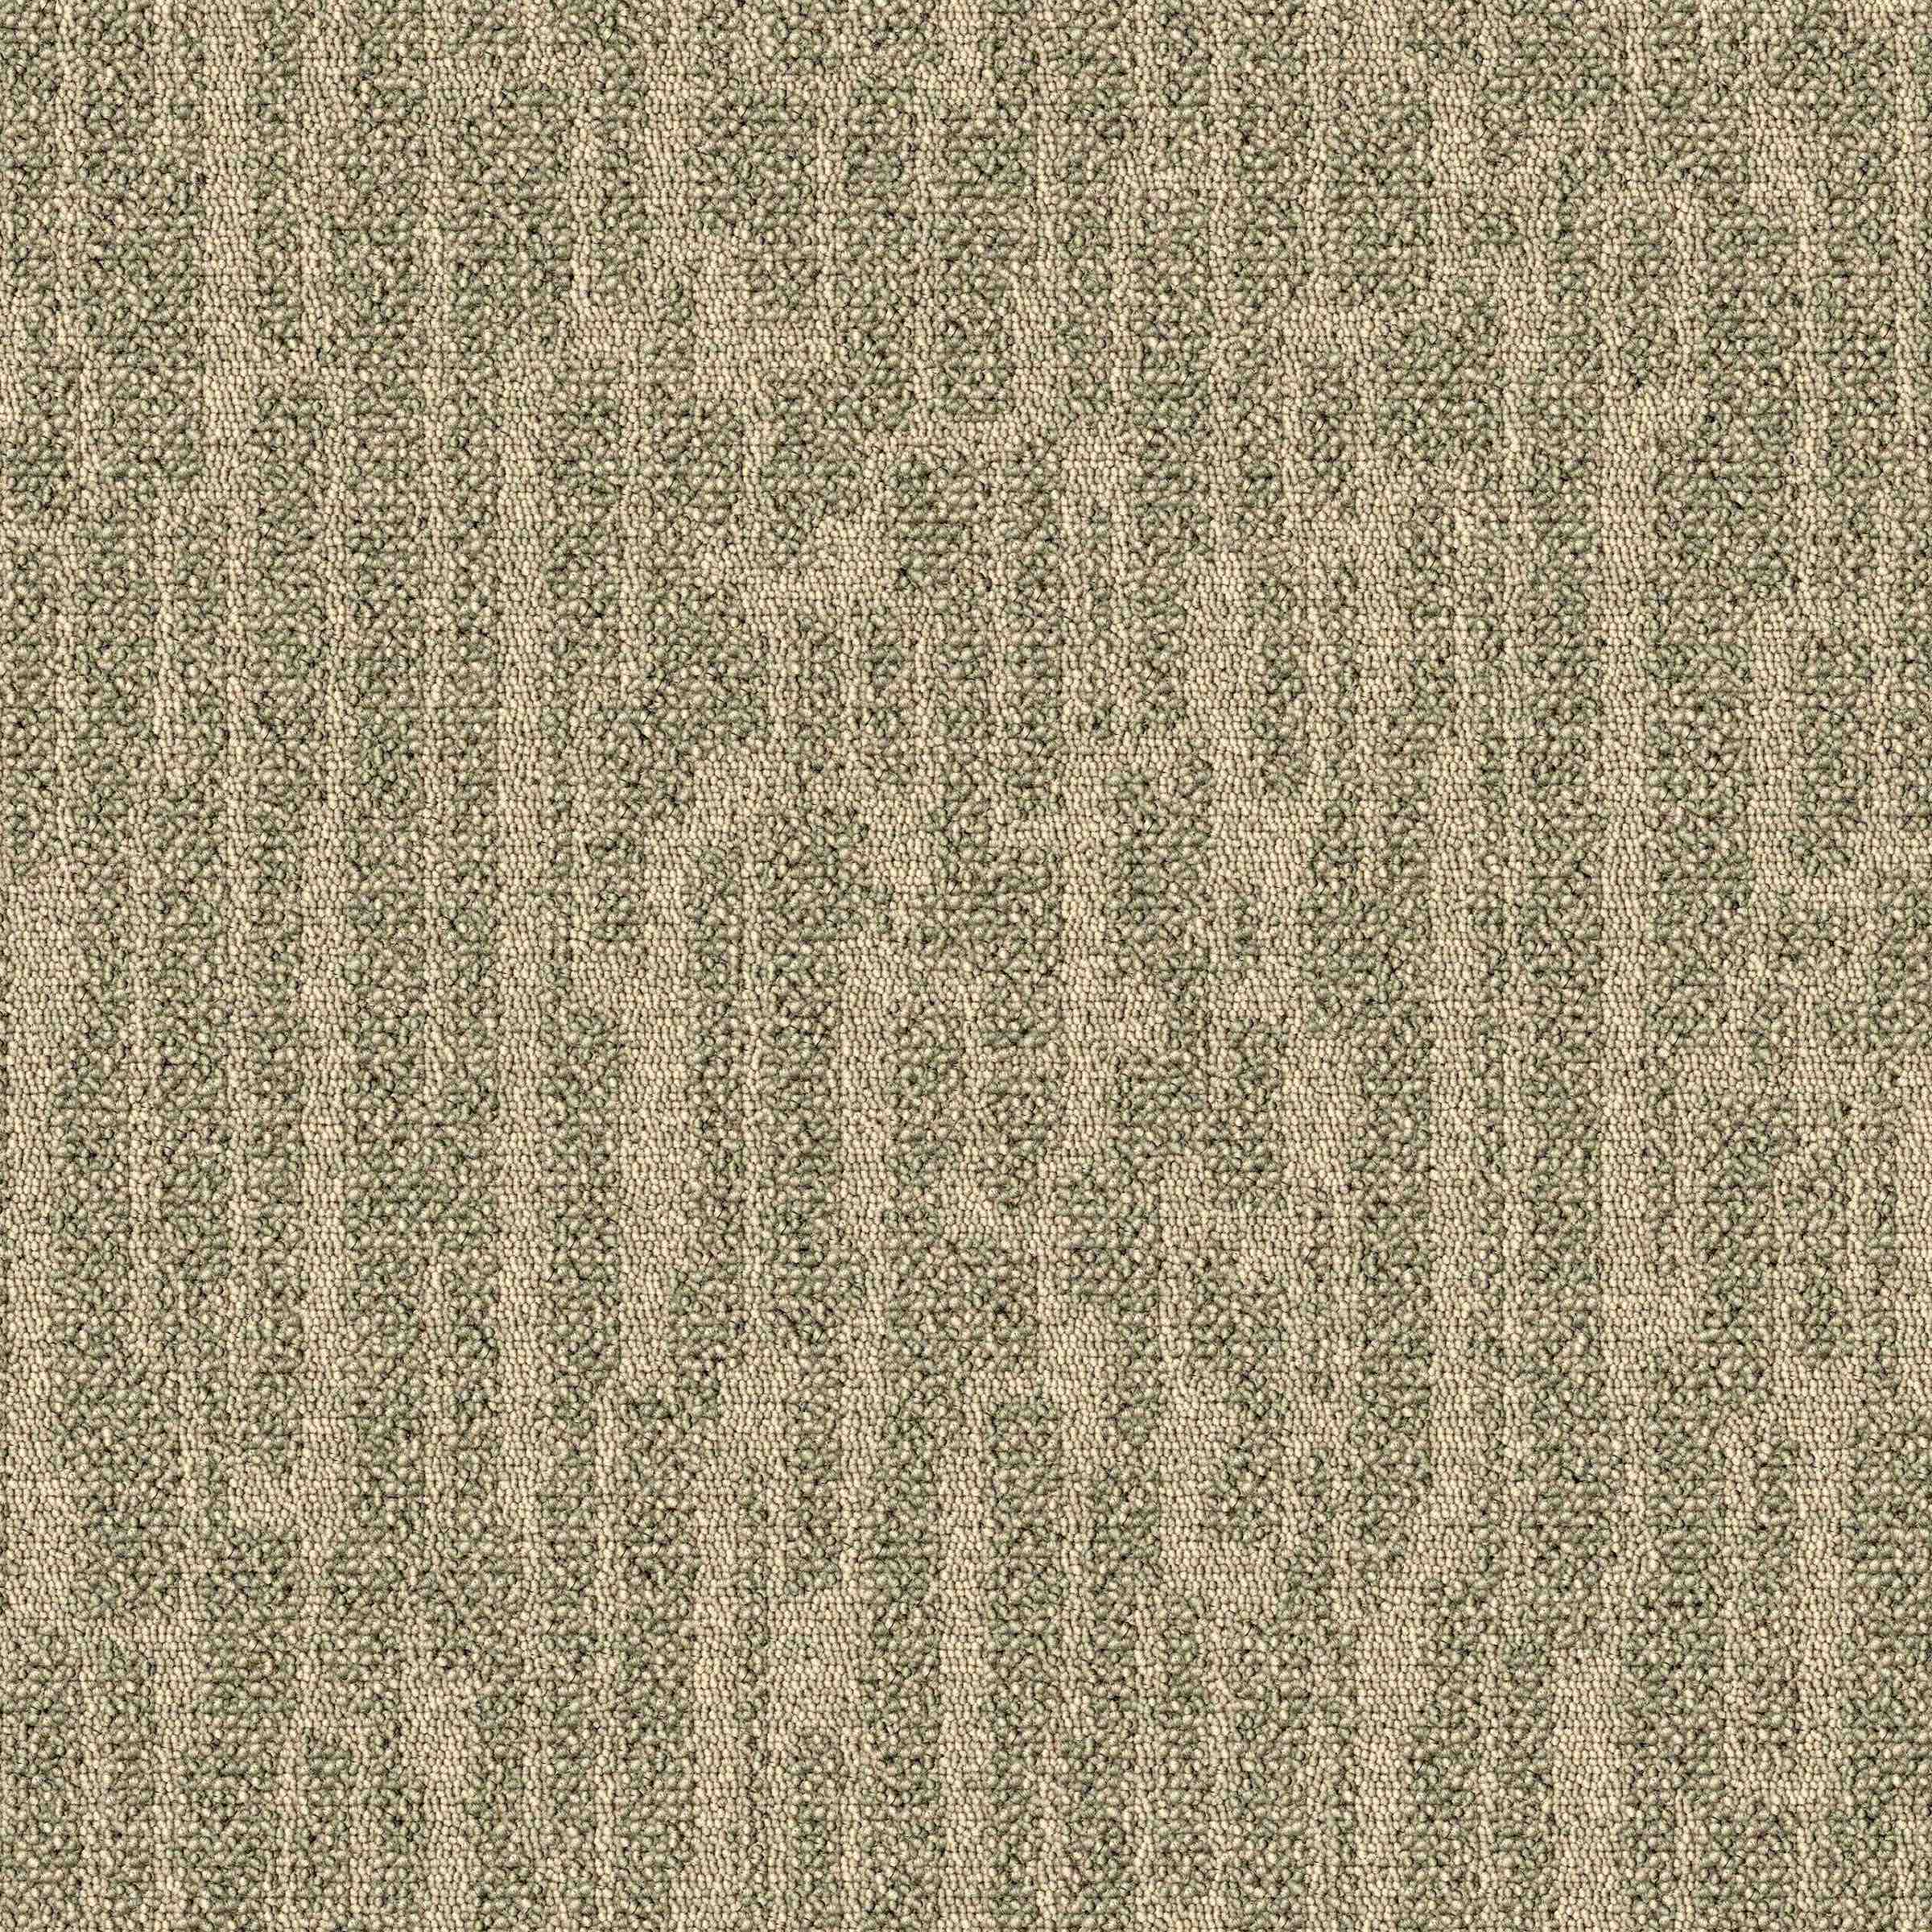 Greda | Crackled Station | Paragon Carpet Tiles | Commercial Carpet Tiles